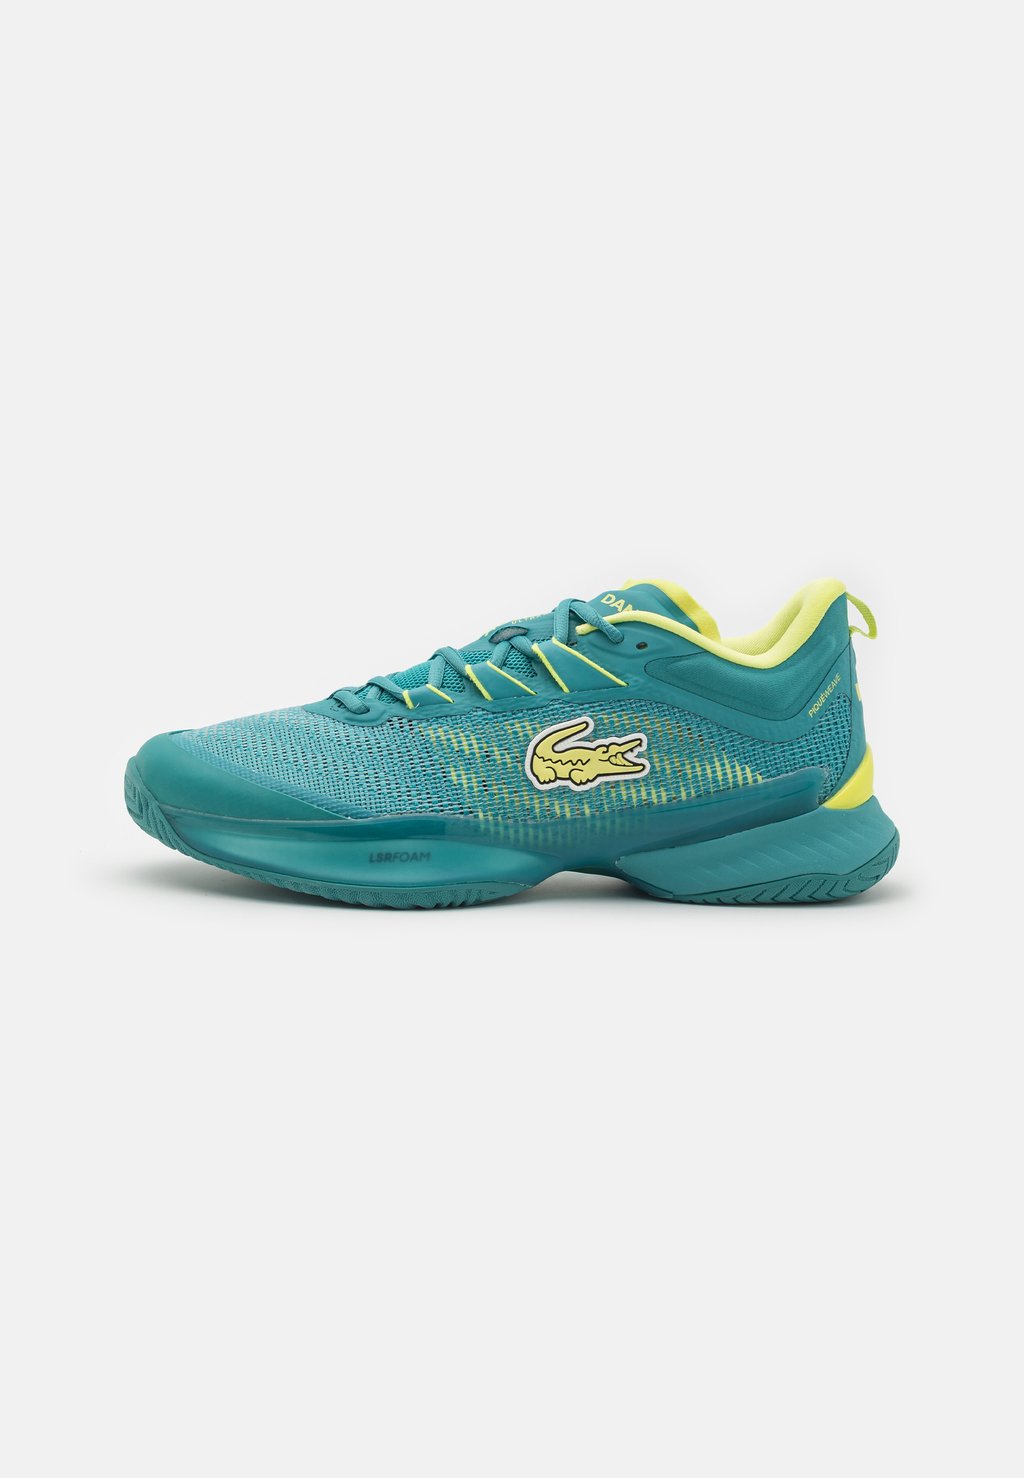 Все туфли для тенниса Ag Lt23 Ultra Mc Lacoste, цвет turquoise/yellow